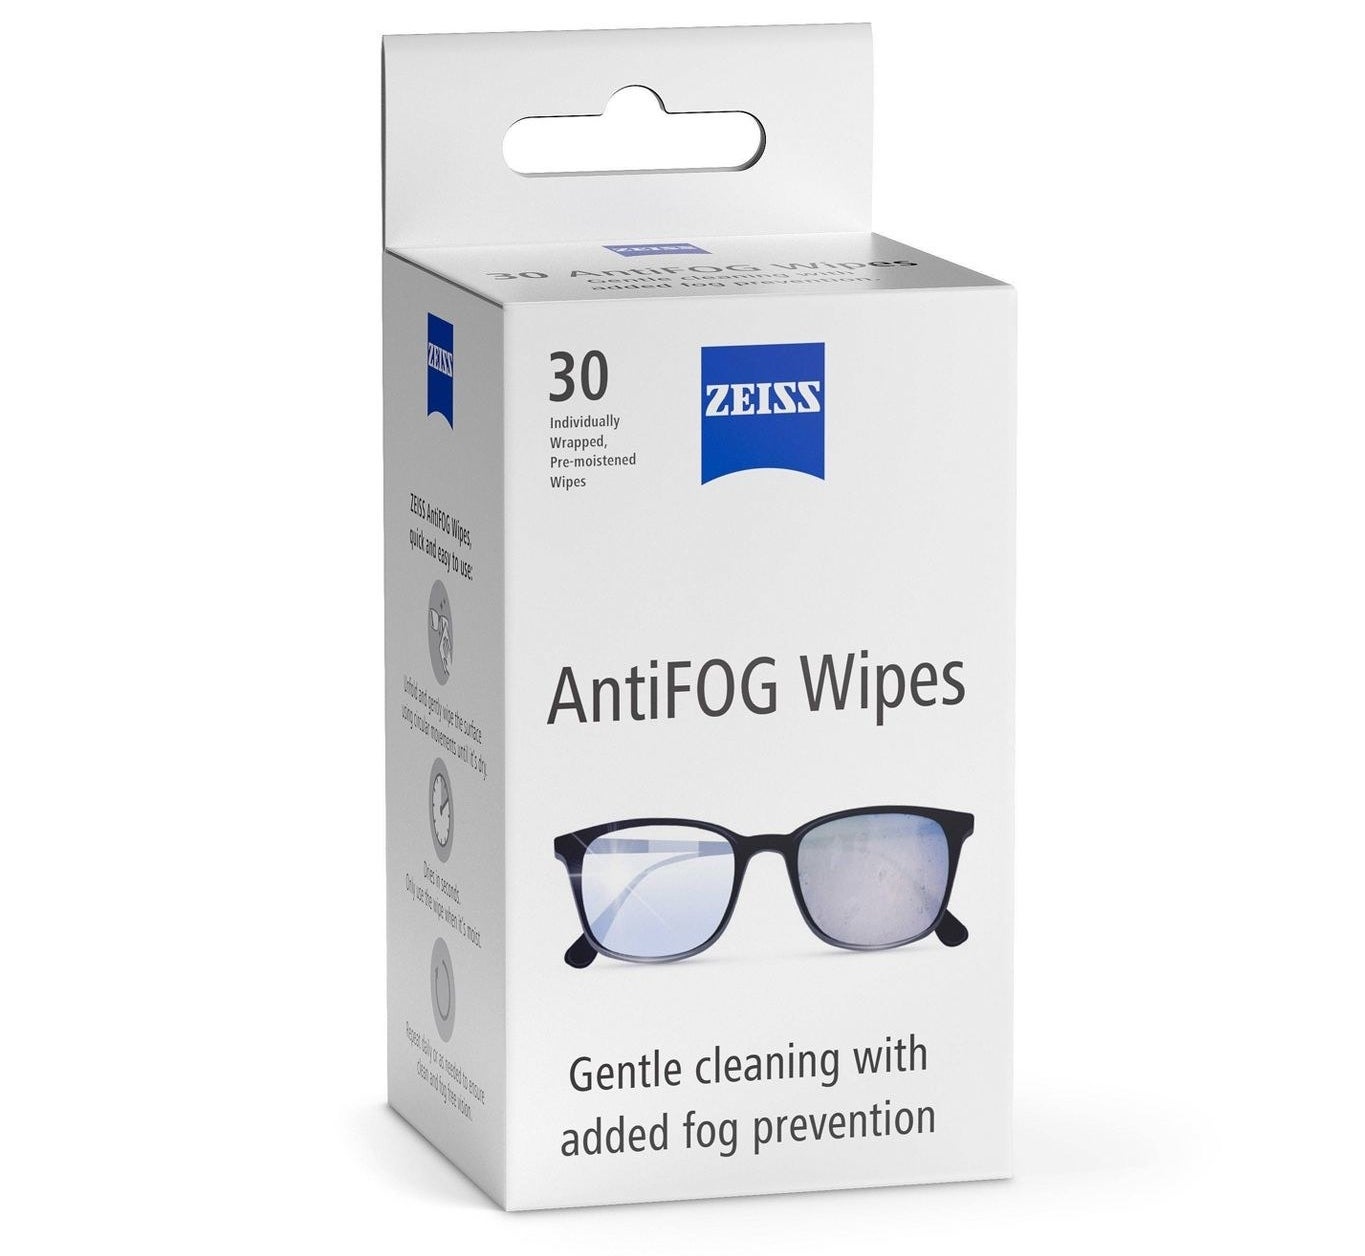 The pack of anti-fog wipes